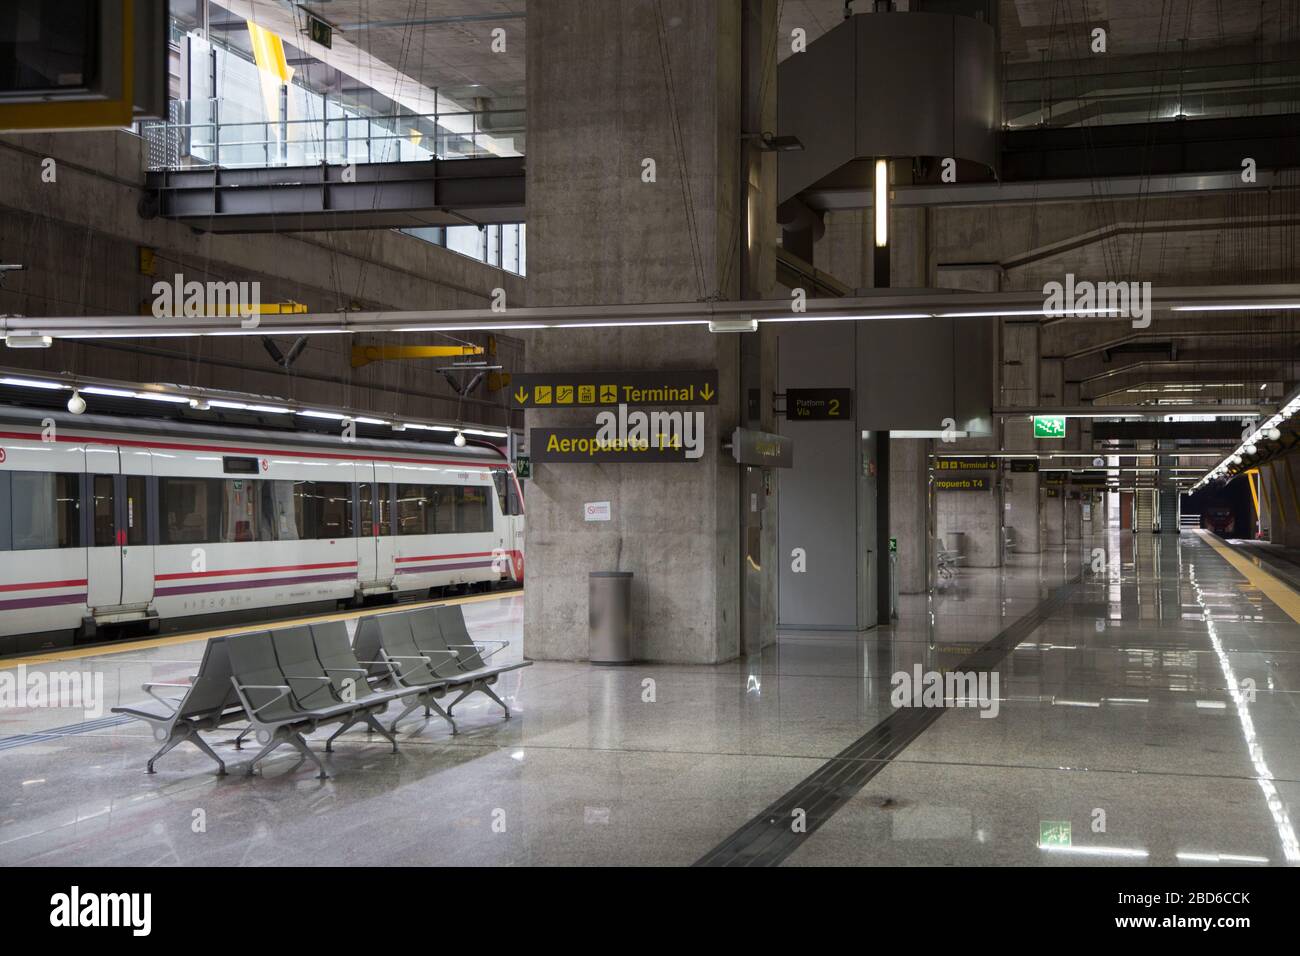 Madrid, Spagna. 7 aprile 2020. La stazione dei treni pendolari del Terminal 4 dell'Aeroporto di Madrid è completamente vuota all'ora di punta di martedì. (Foto di Fer Capdecon Arroyo/Pacific Press) Credit: Pacific Press Agency/Alamy Live News Foto Stock